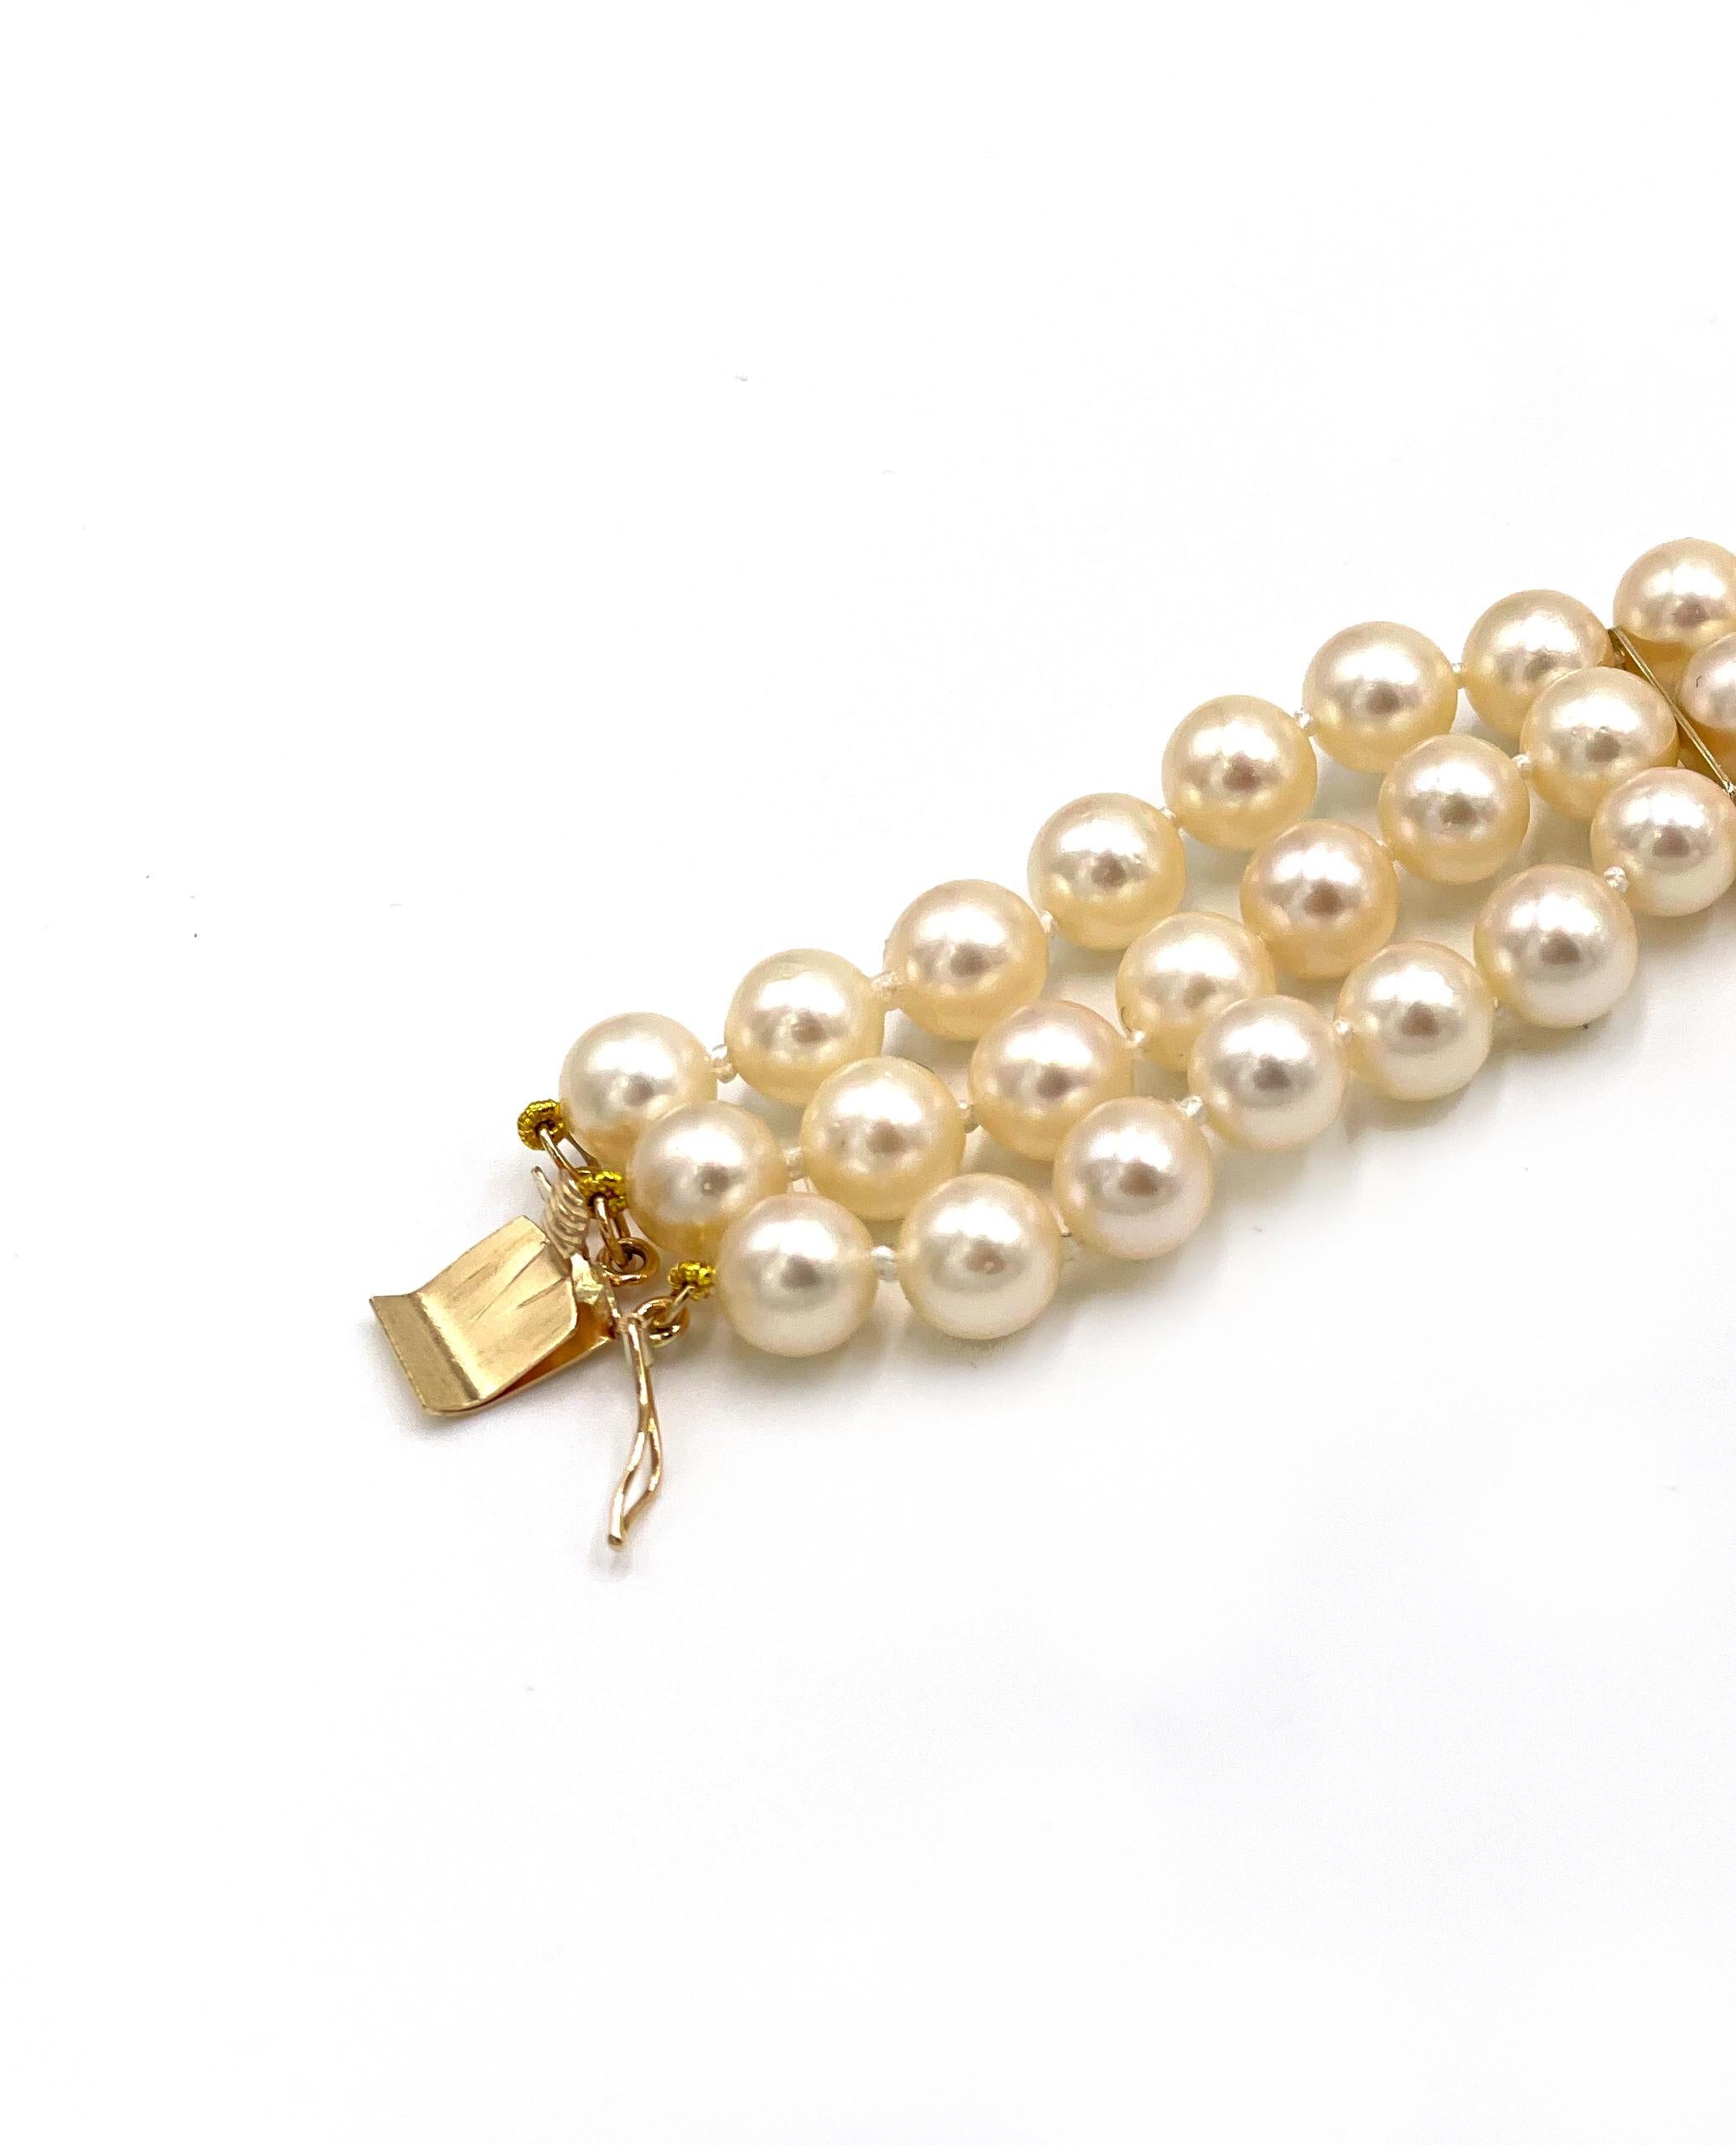 Bracelet de perles à trois rangs multiples avec entretoises en or jaune 14K et serrure fantaisie 14K et 18K ornée de 0,11 carats de diamants jaunes naturels et de 0,32 carats de diamants presque incolores.  Les perles mesurent en moyenne de 6 à 6,5